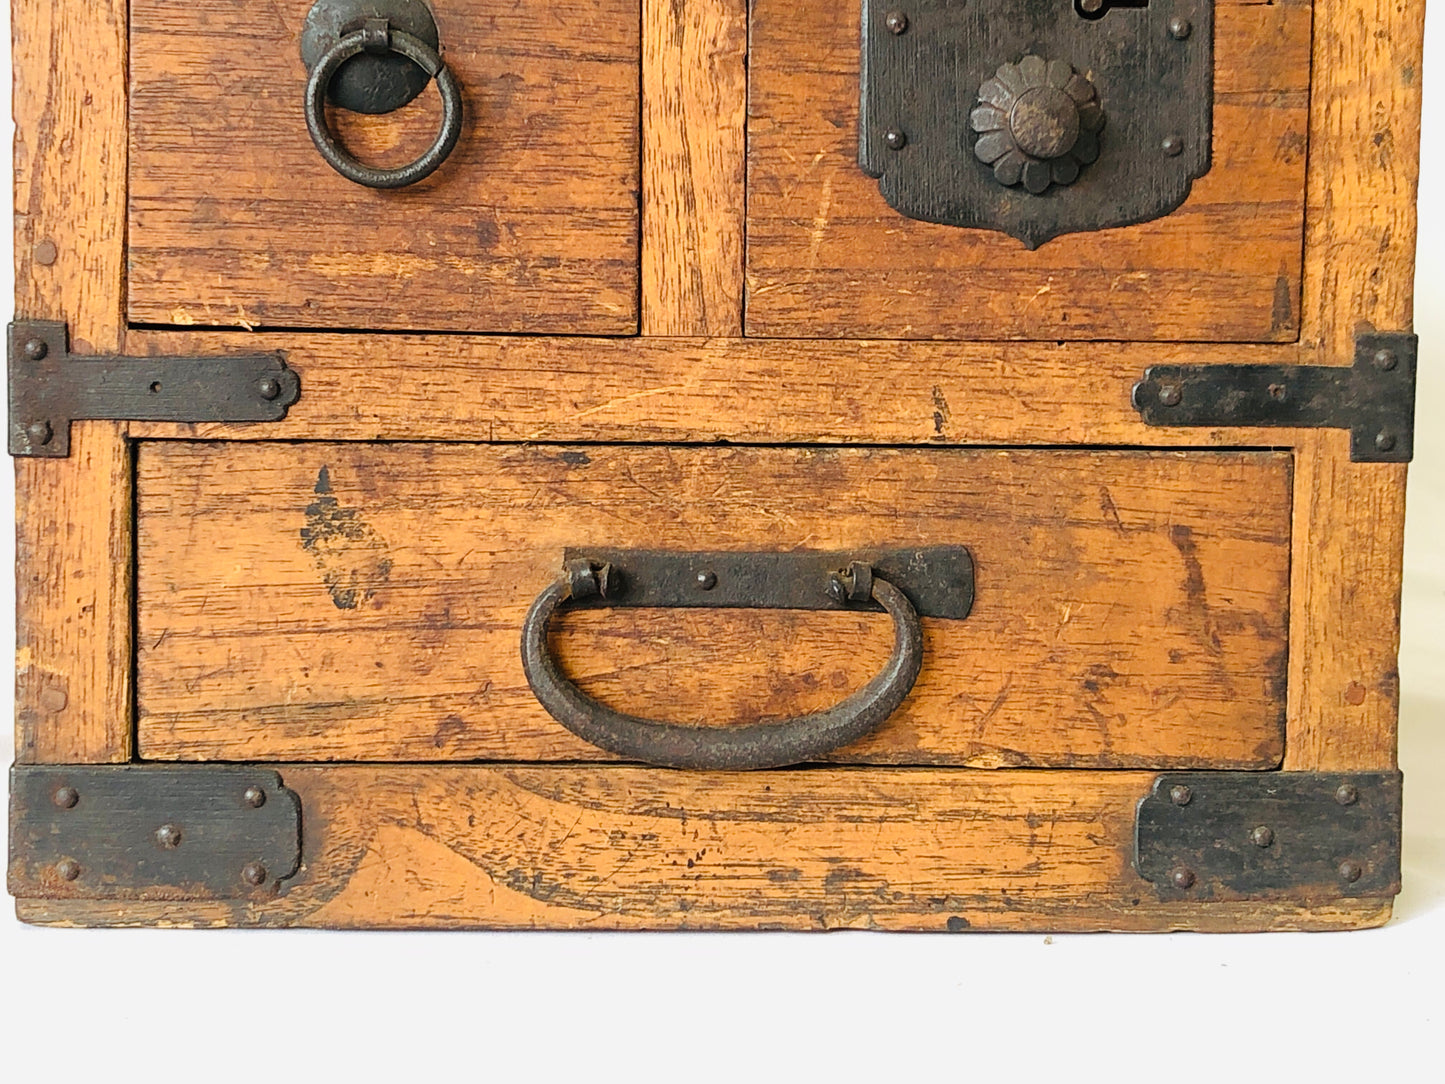 Y4979 TANSU wooden chest of drawers Suzuri box storage Japan antique vintage